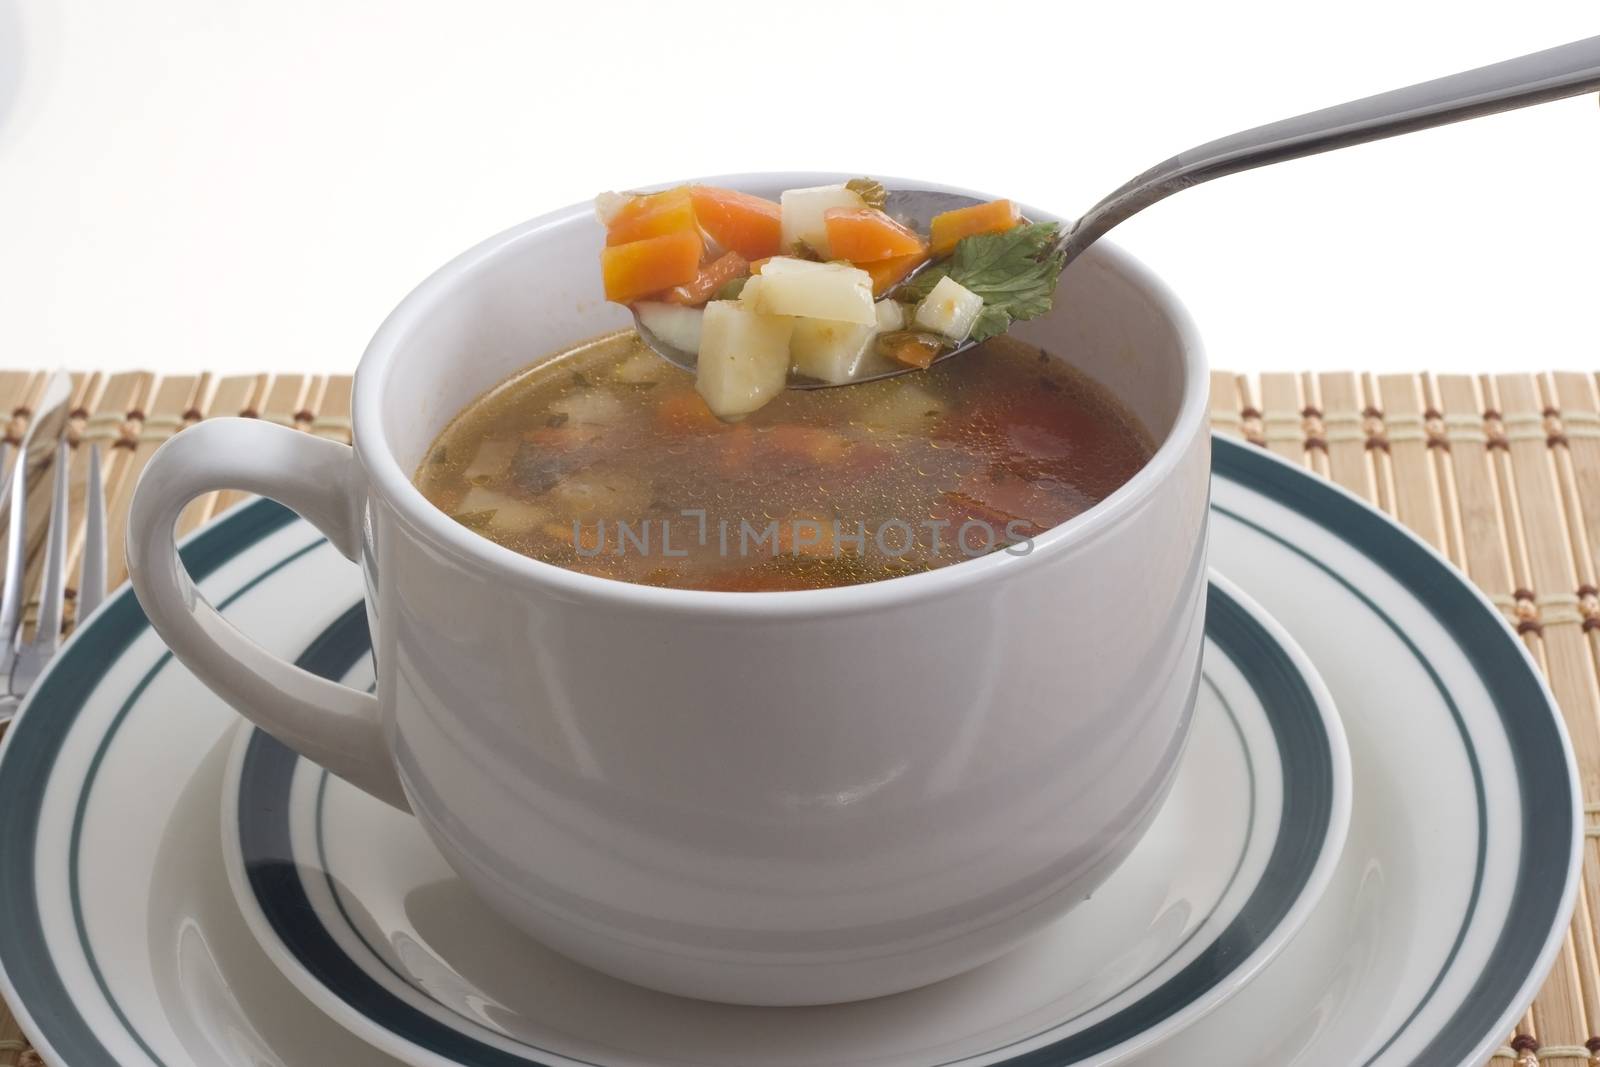 soup tasting by orcearo